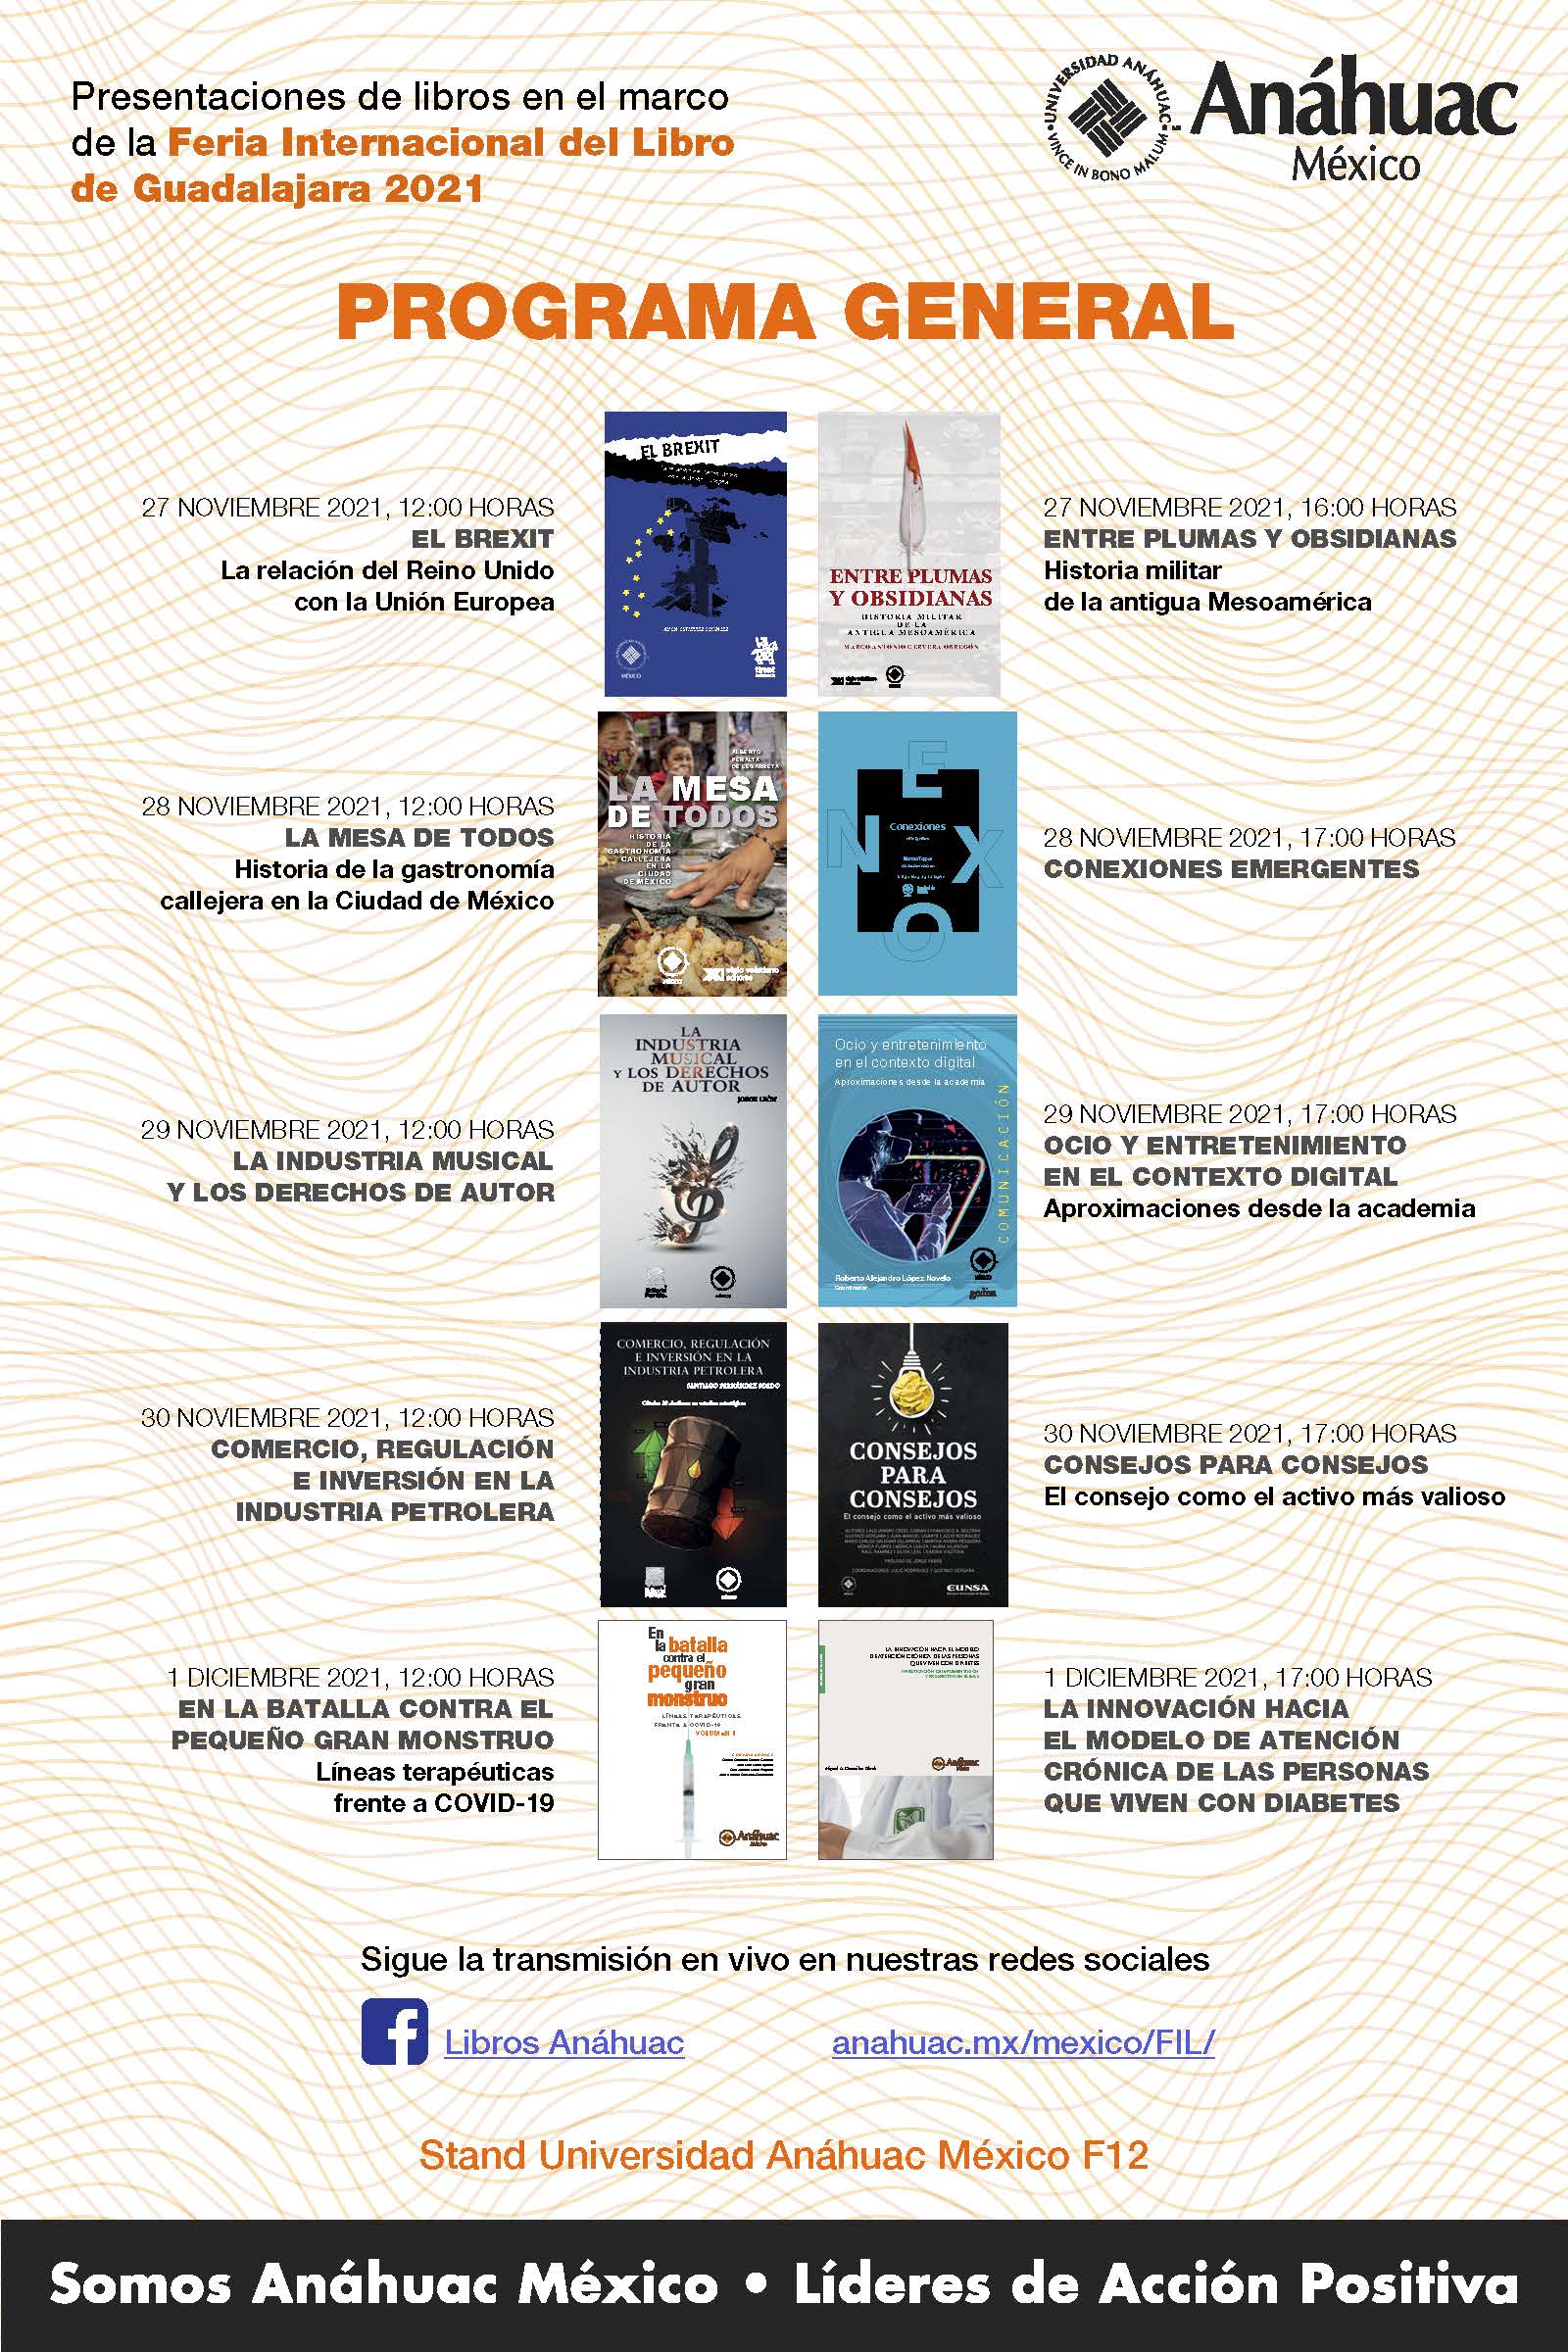 Conoce y participa en las presentaciones de libros Anáhuac en la FIL Guadalajara 2021